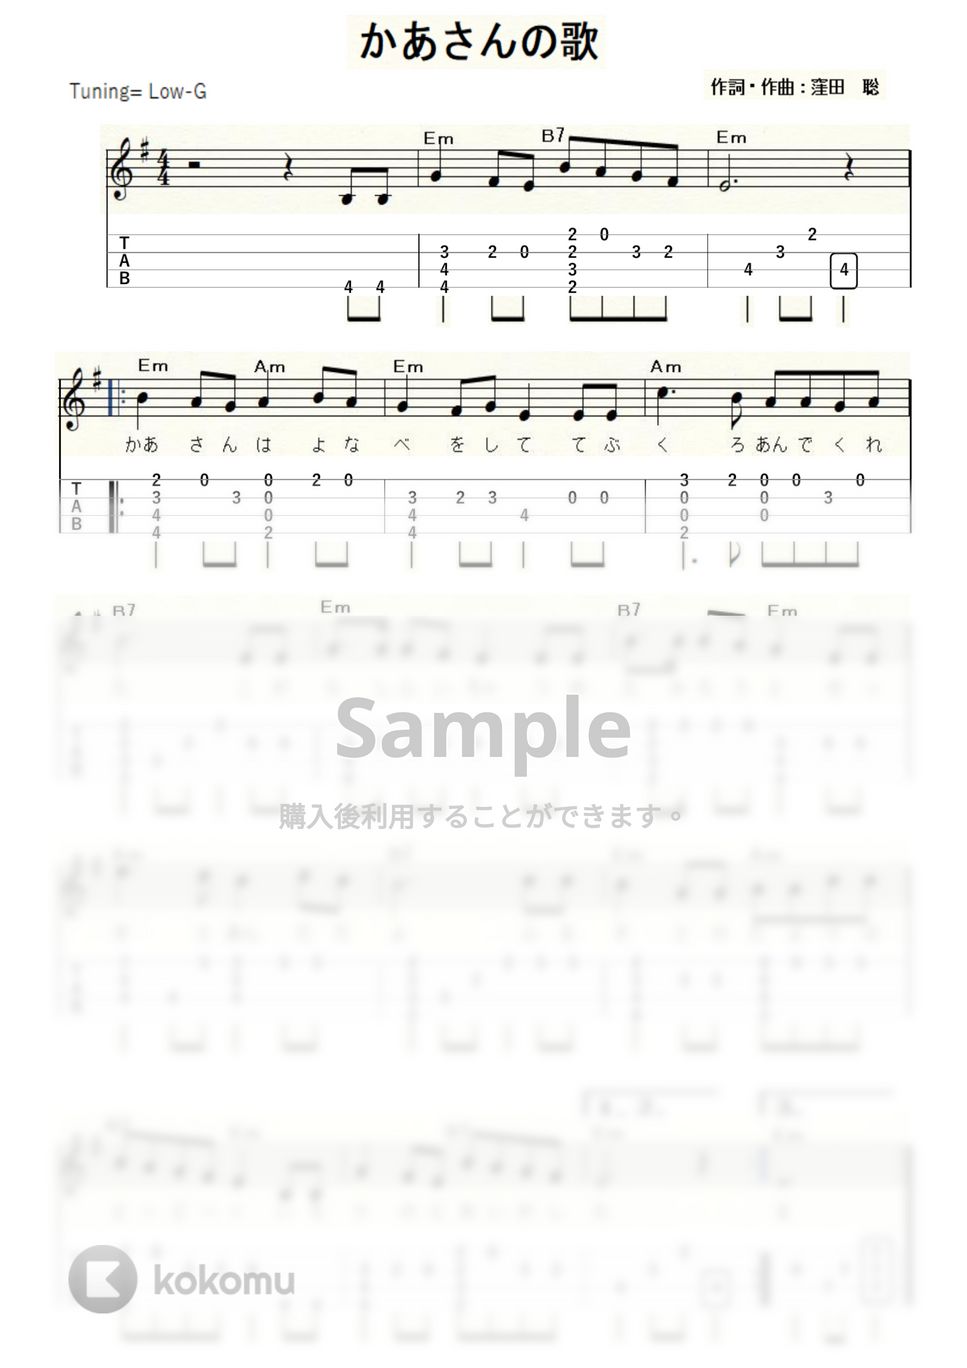 窪田聡 - かあさんの歌 (ｳｸﾚﾚｿﾛ/Low-G/初級～中級) by ukulelepapa